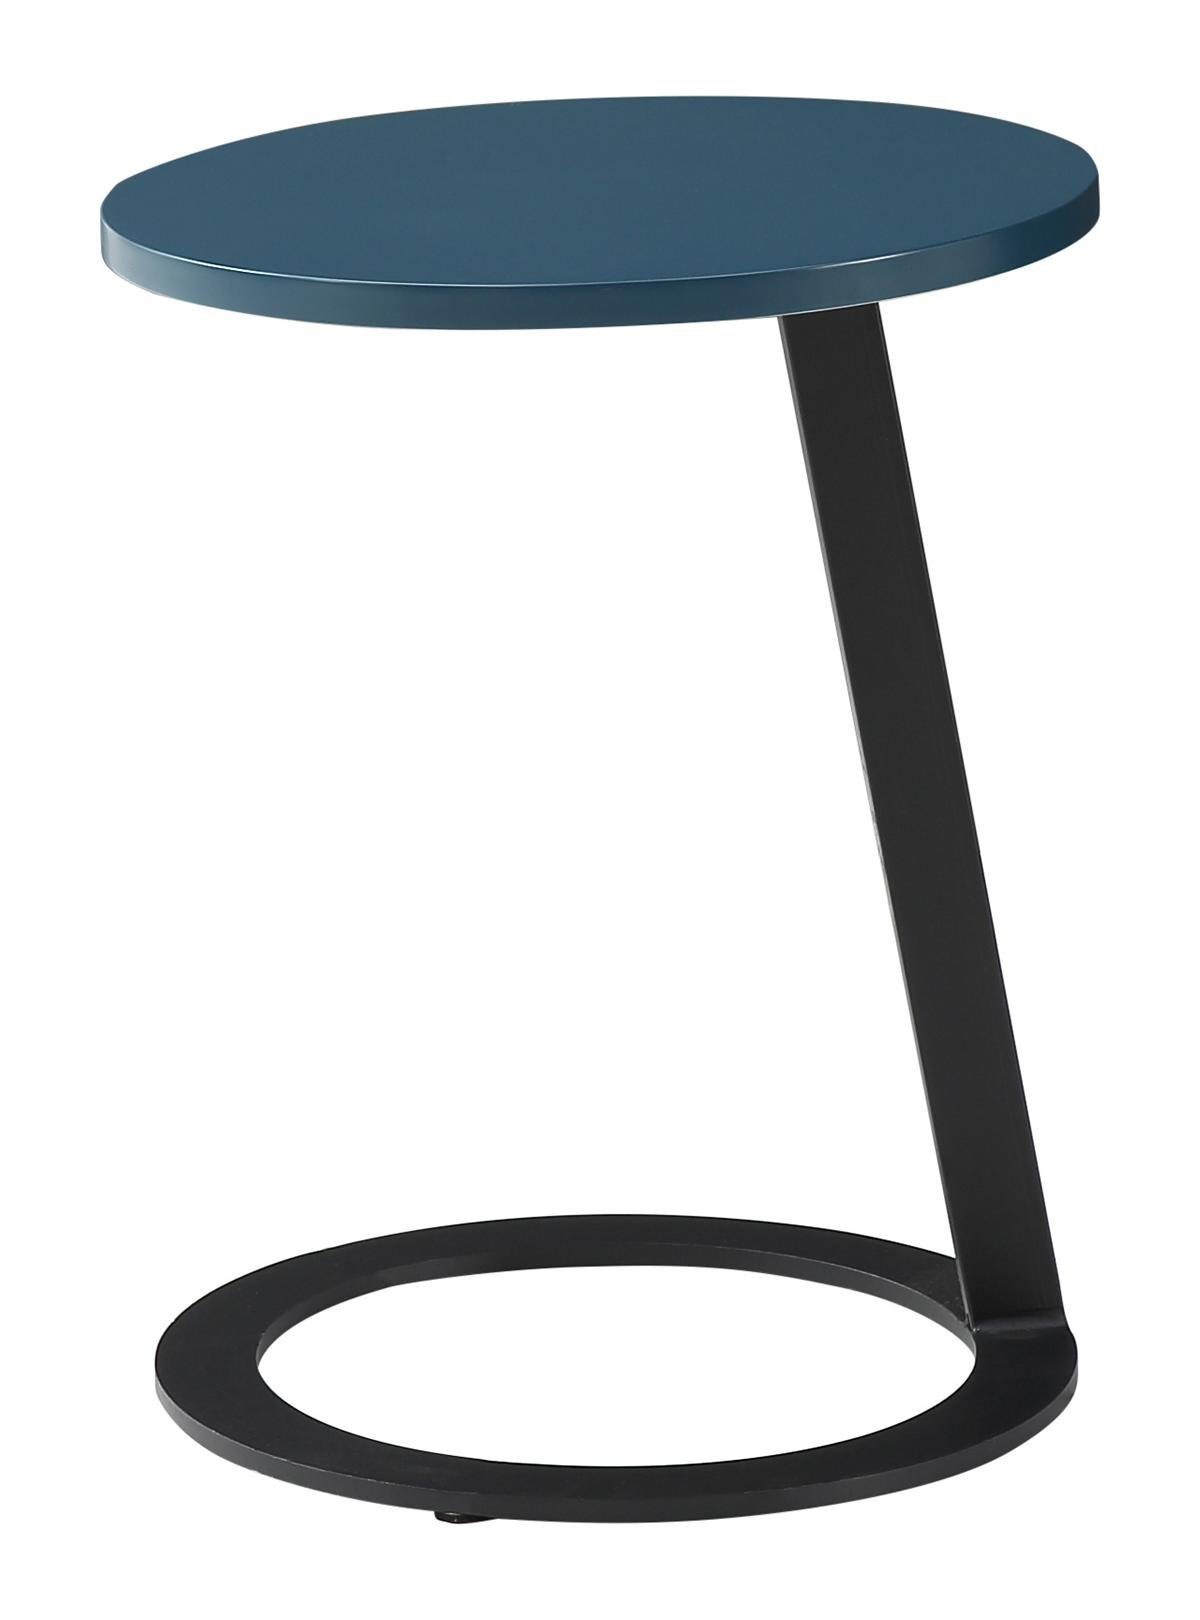 Jafra Couchtisch, Beistelltisch Tisch Couchtisch Tische Rund Design Runde Sofa Wohnzimmer Tisch